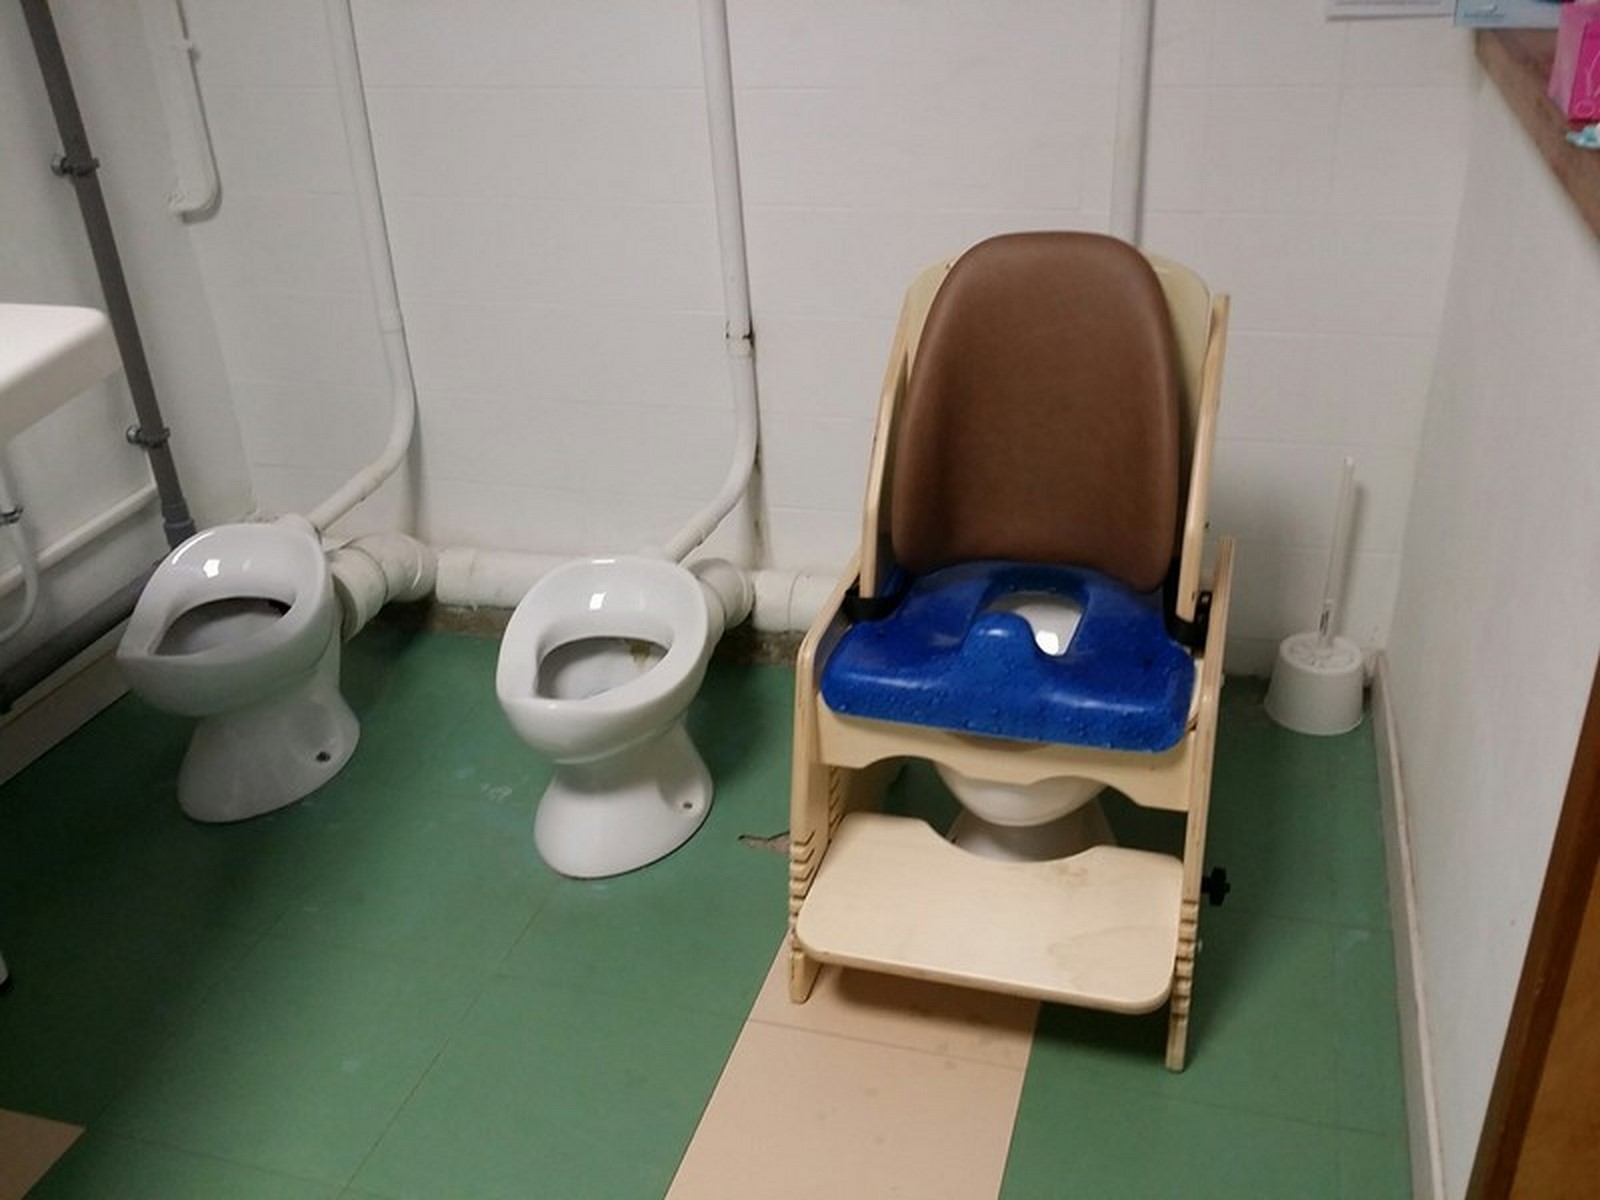 Le siège de WC Maternelle - Gabamousse - Mobilier adapté pour